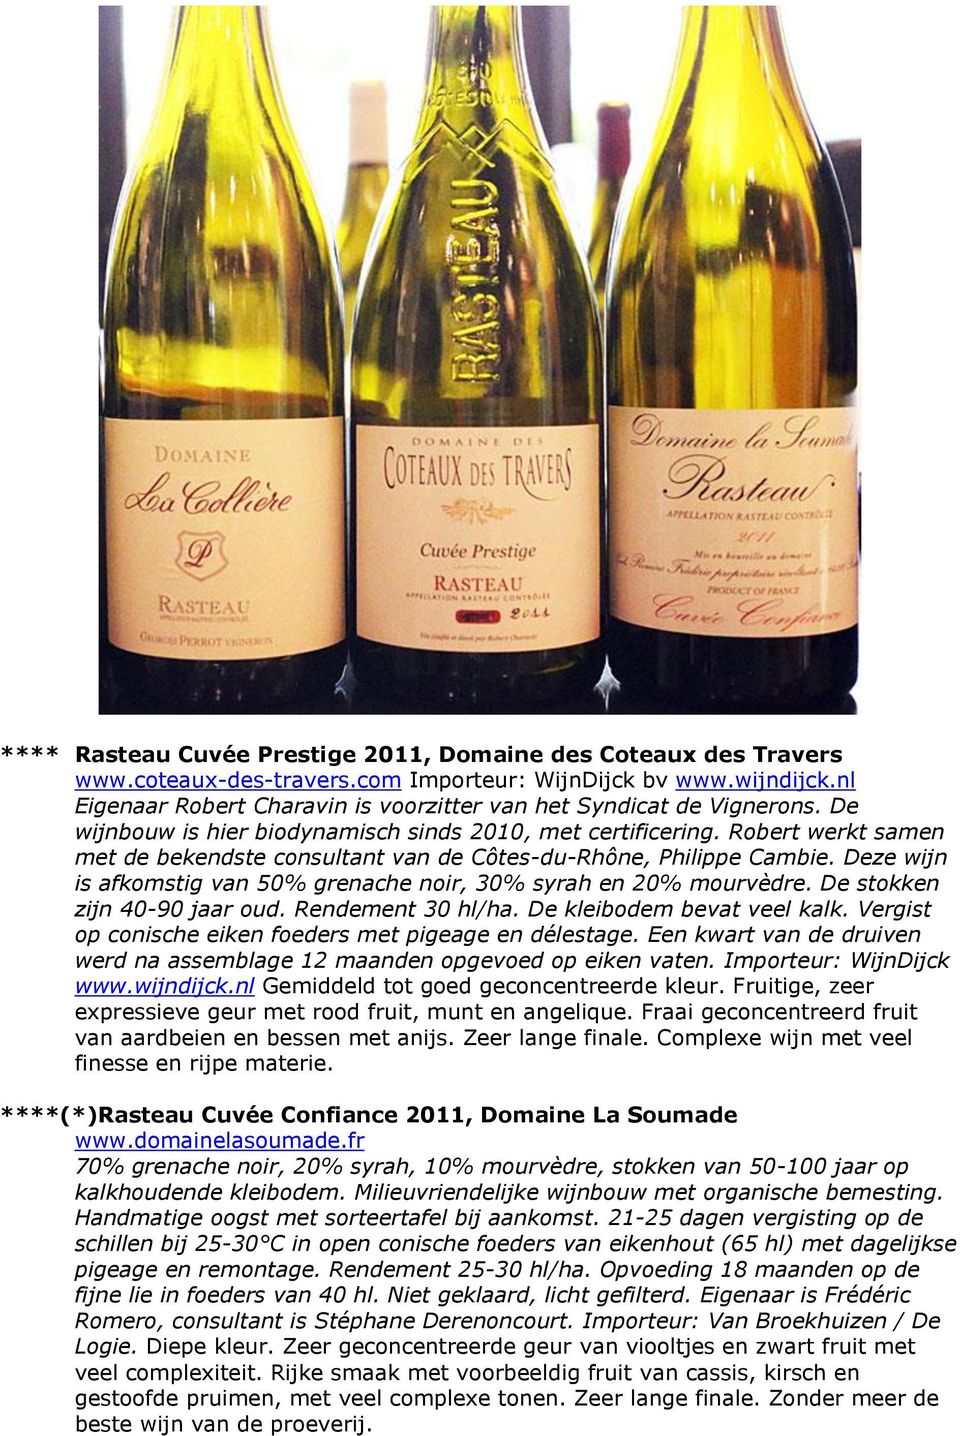 Robert werkt samen met de bekendste consultant van de Côtes-du-Rhône, Philippe Cambie. Deze wijn is afkomstig van 50% grenache noir, 30% syrah en 20% mourvèdre. De stokken zijn 40-90 jaar oud.